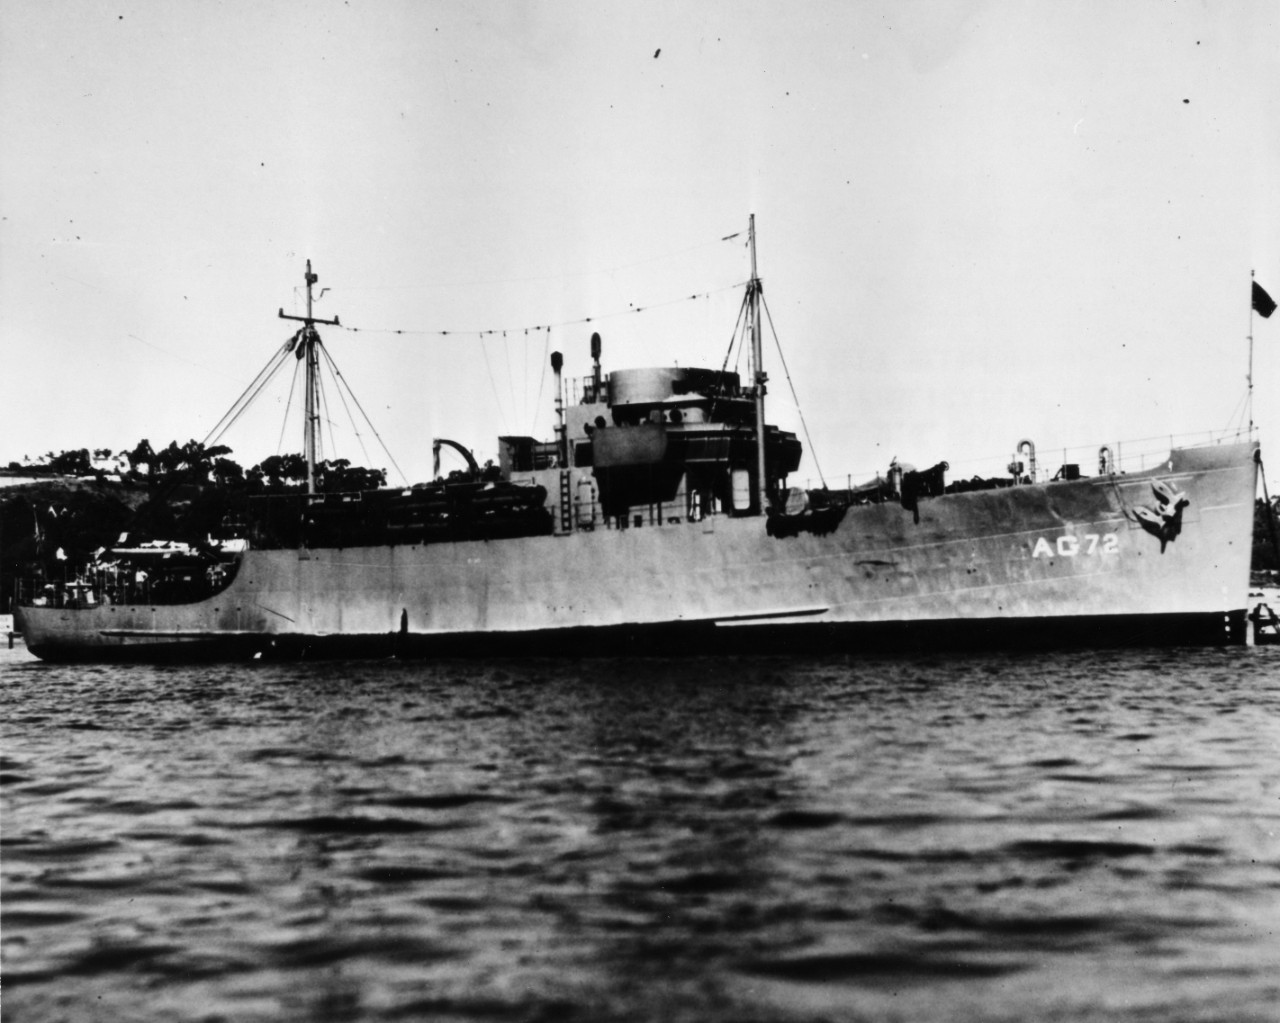 USS Parris Island (AG-72)